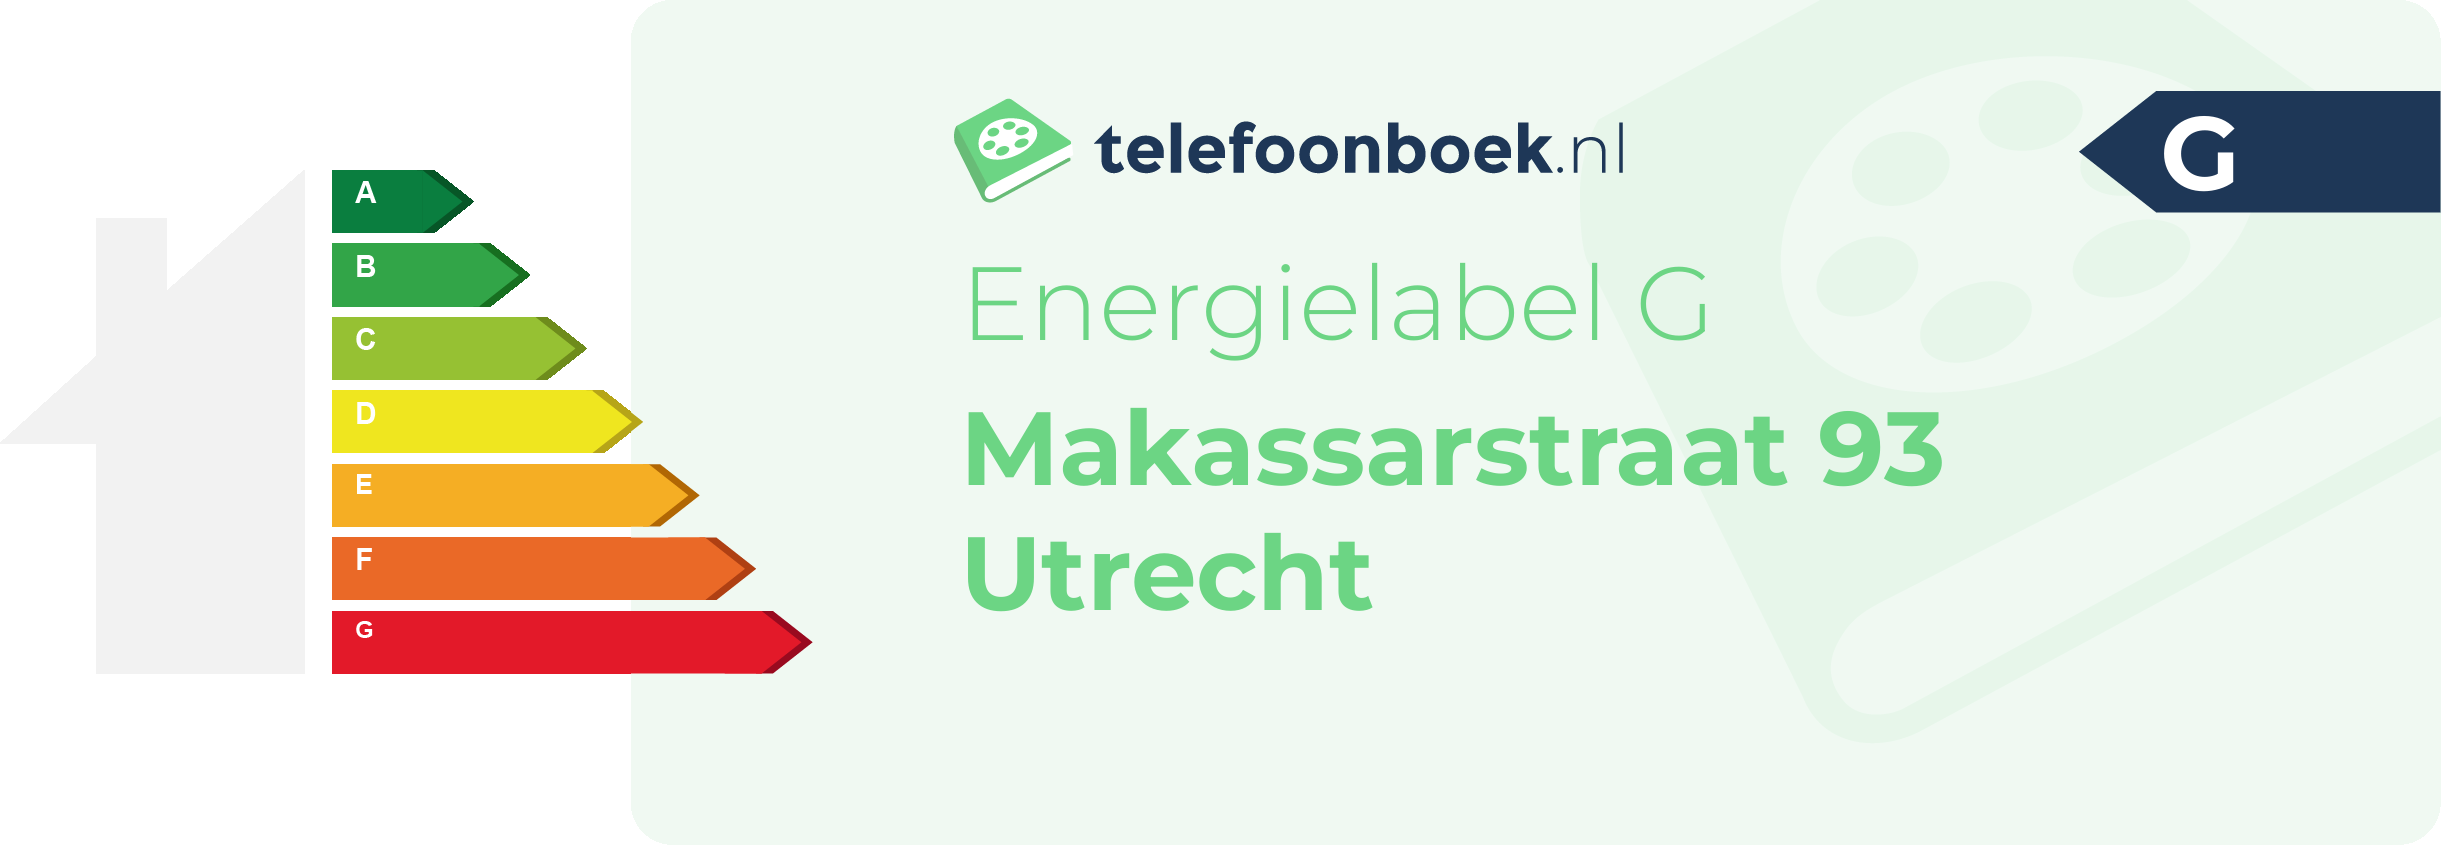 Energielabel Makassarstraat 93 Utrecht